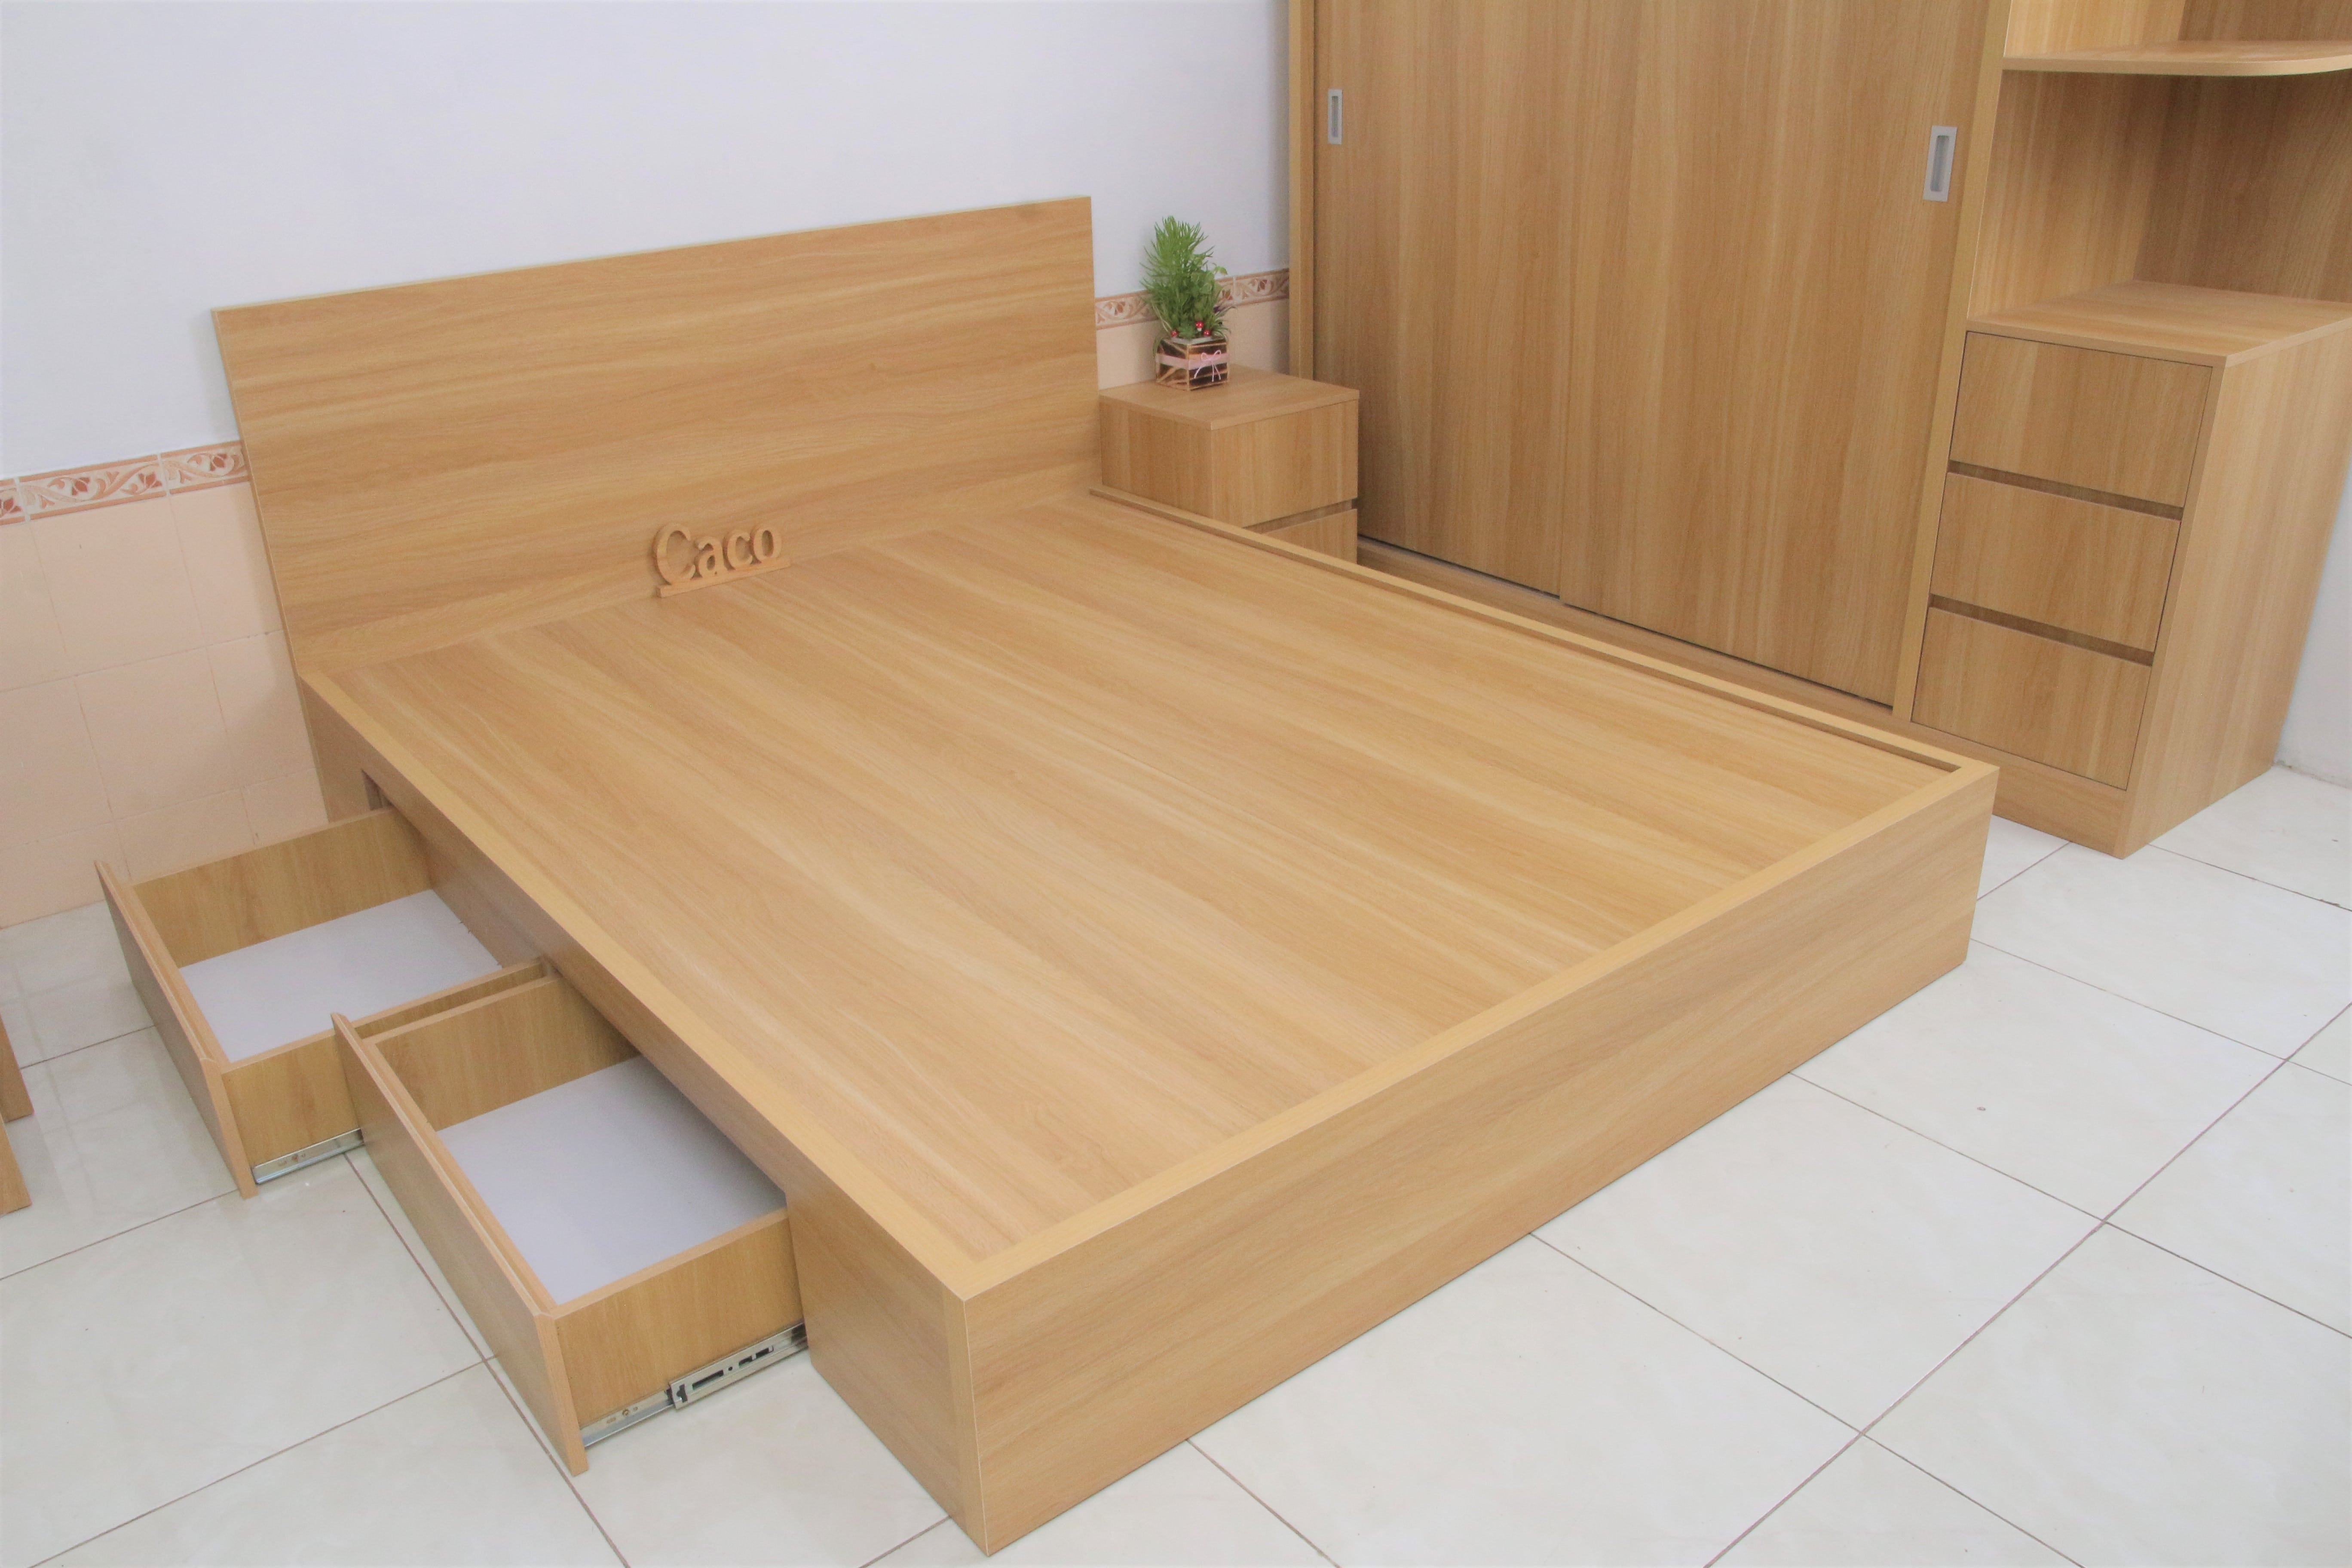 Giường ngủ gỗ MDF Melamine màu vàng vân gỗ cao cấp sử dụng nguyên vật liệu từ gỗ công nghiệp MDF